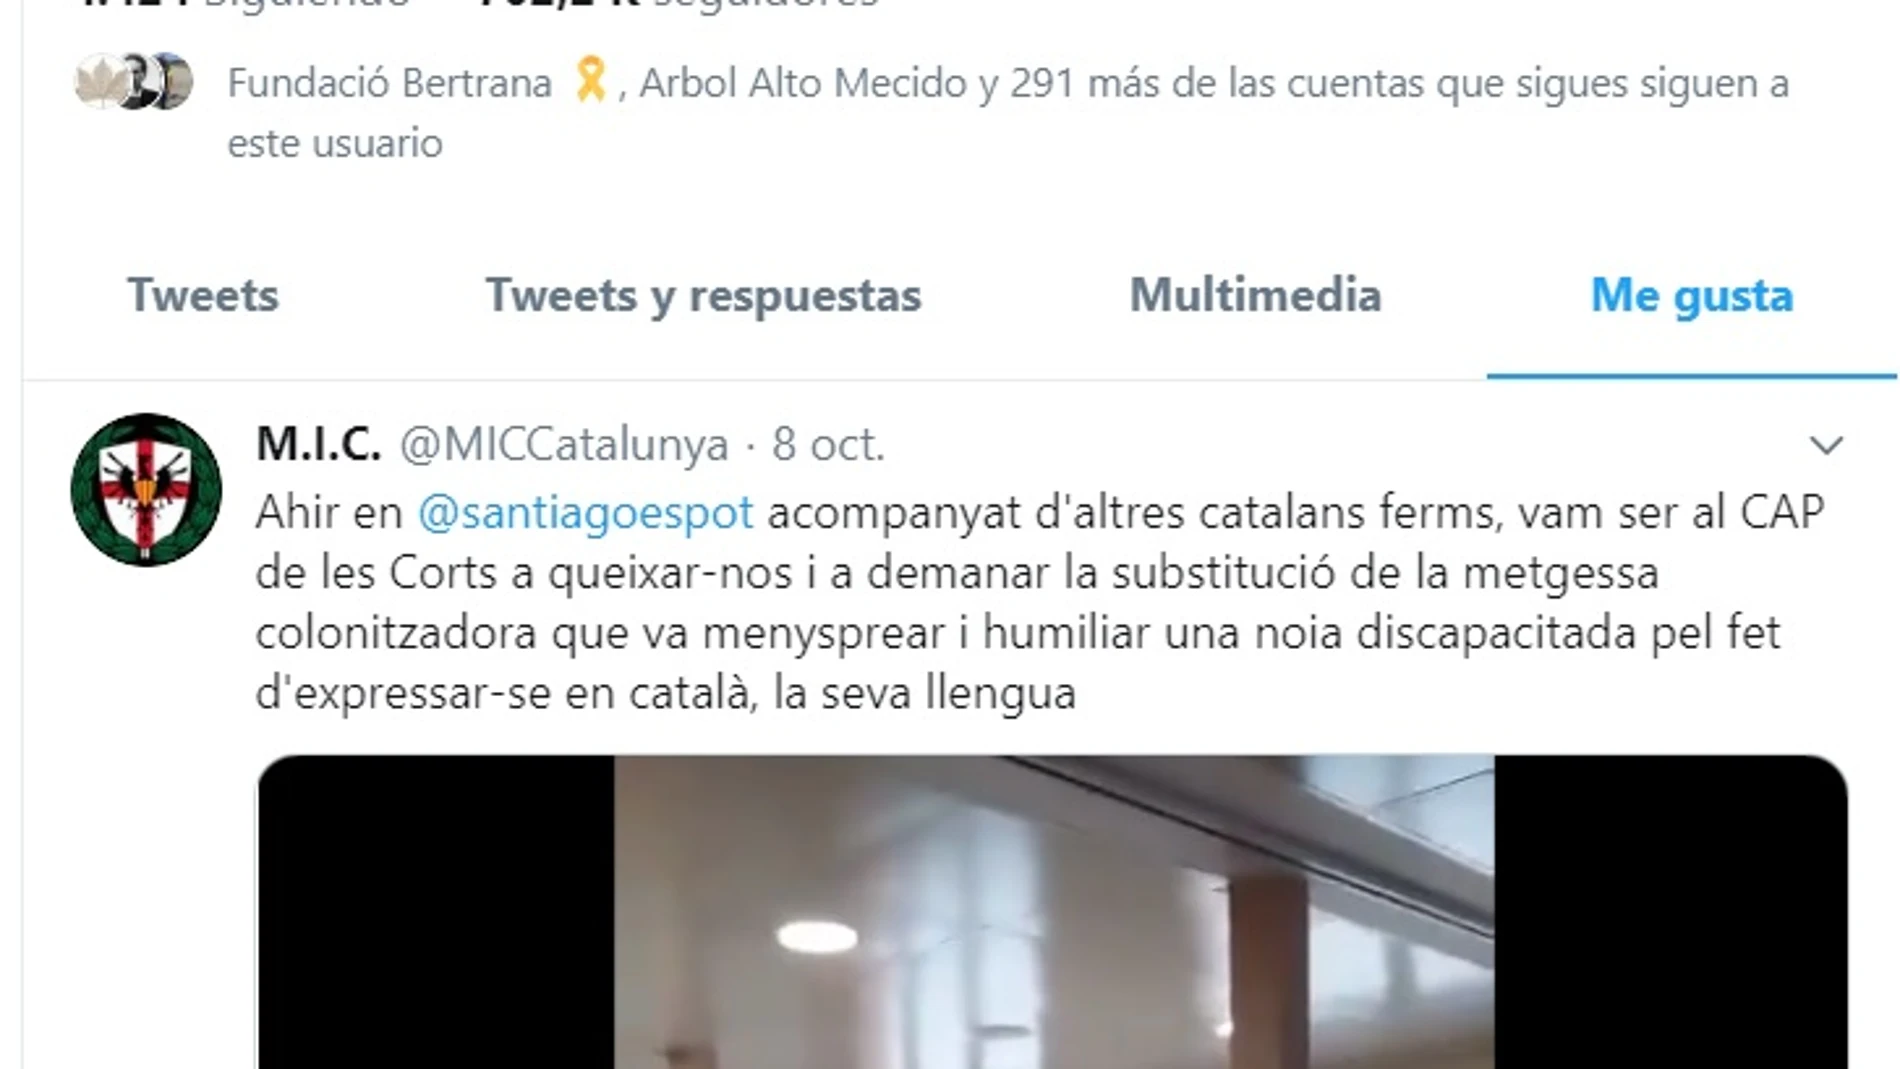 La cuenta en Twitter de Puigdemont mostrando su apoyo a los ultras de MIC